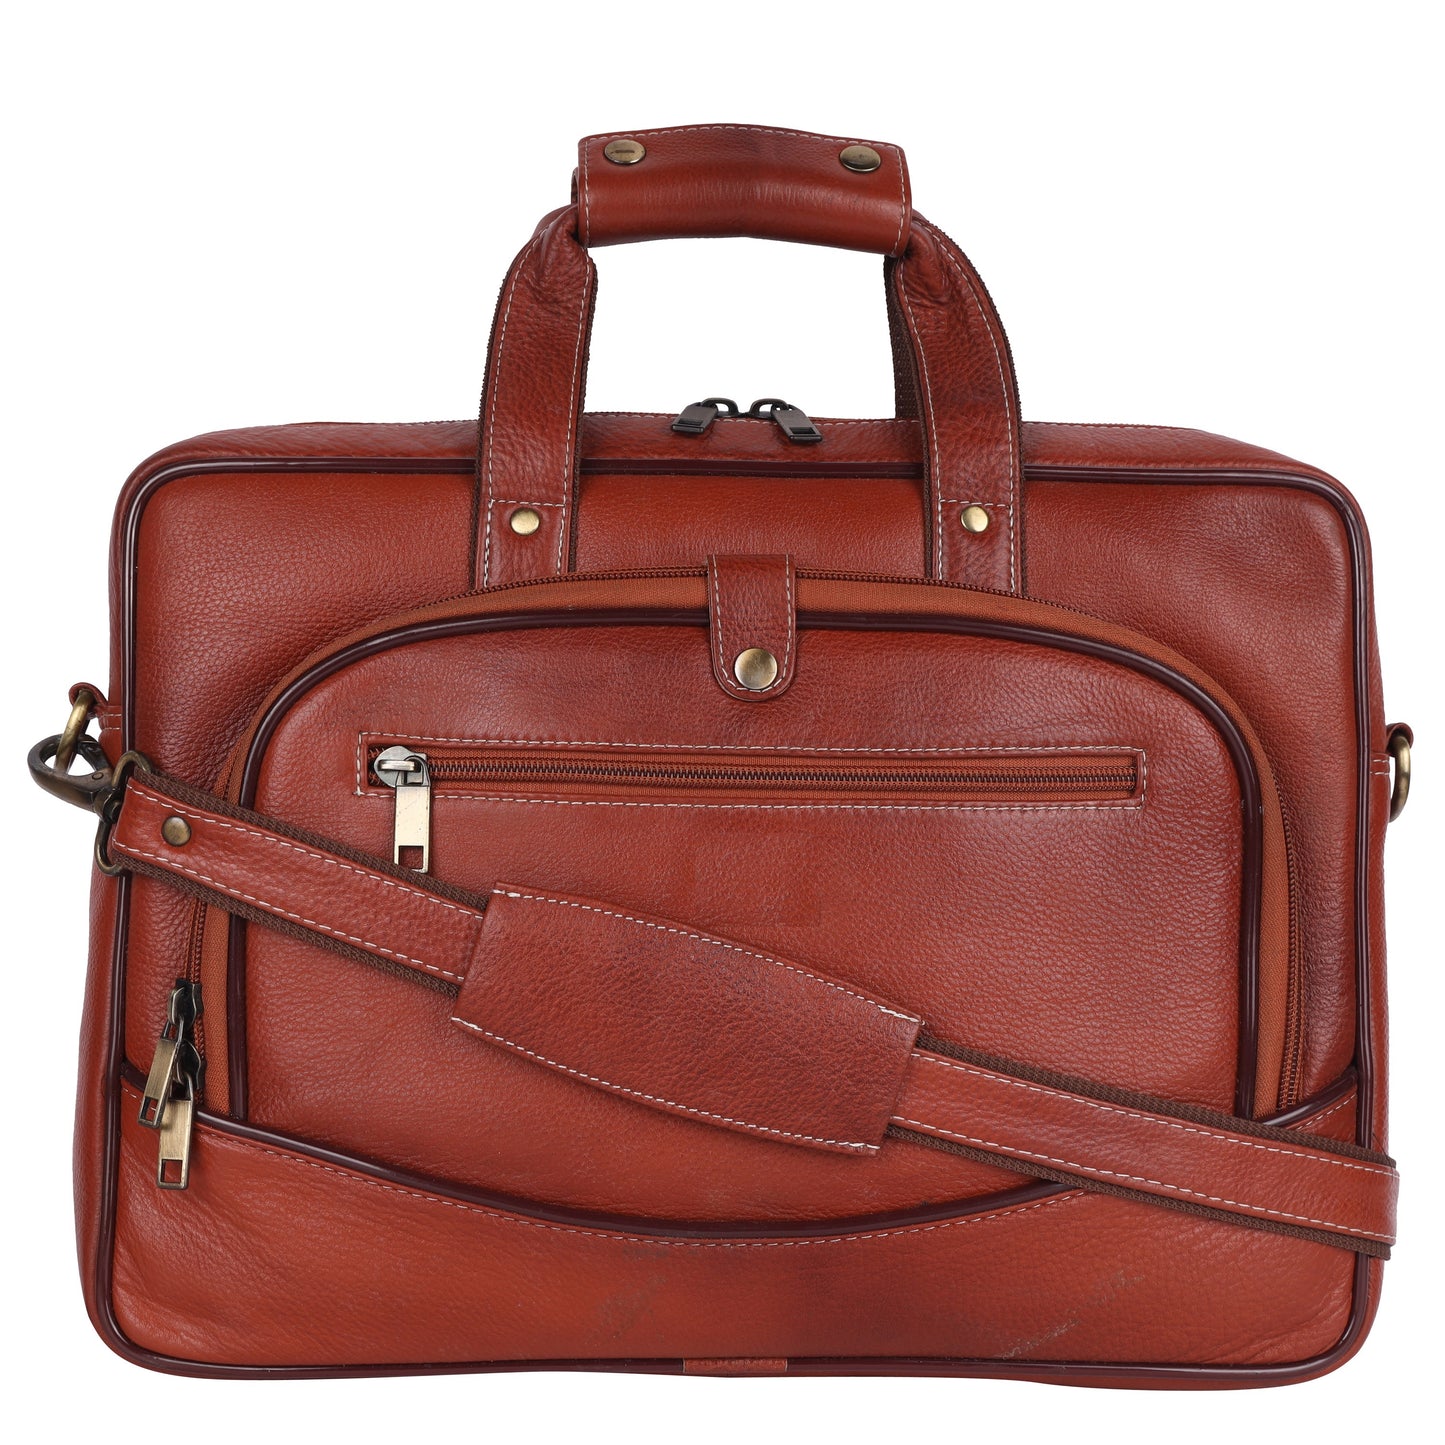 Leather Bombay Brown Shoulder Sling  Bag